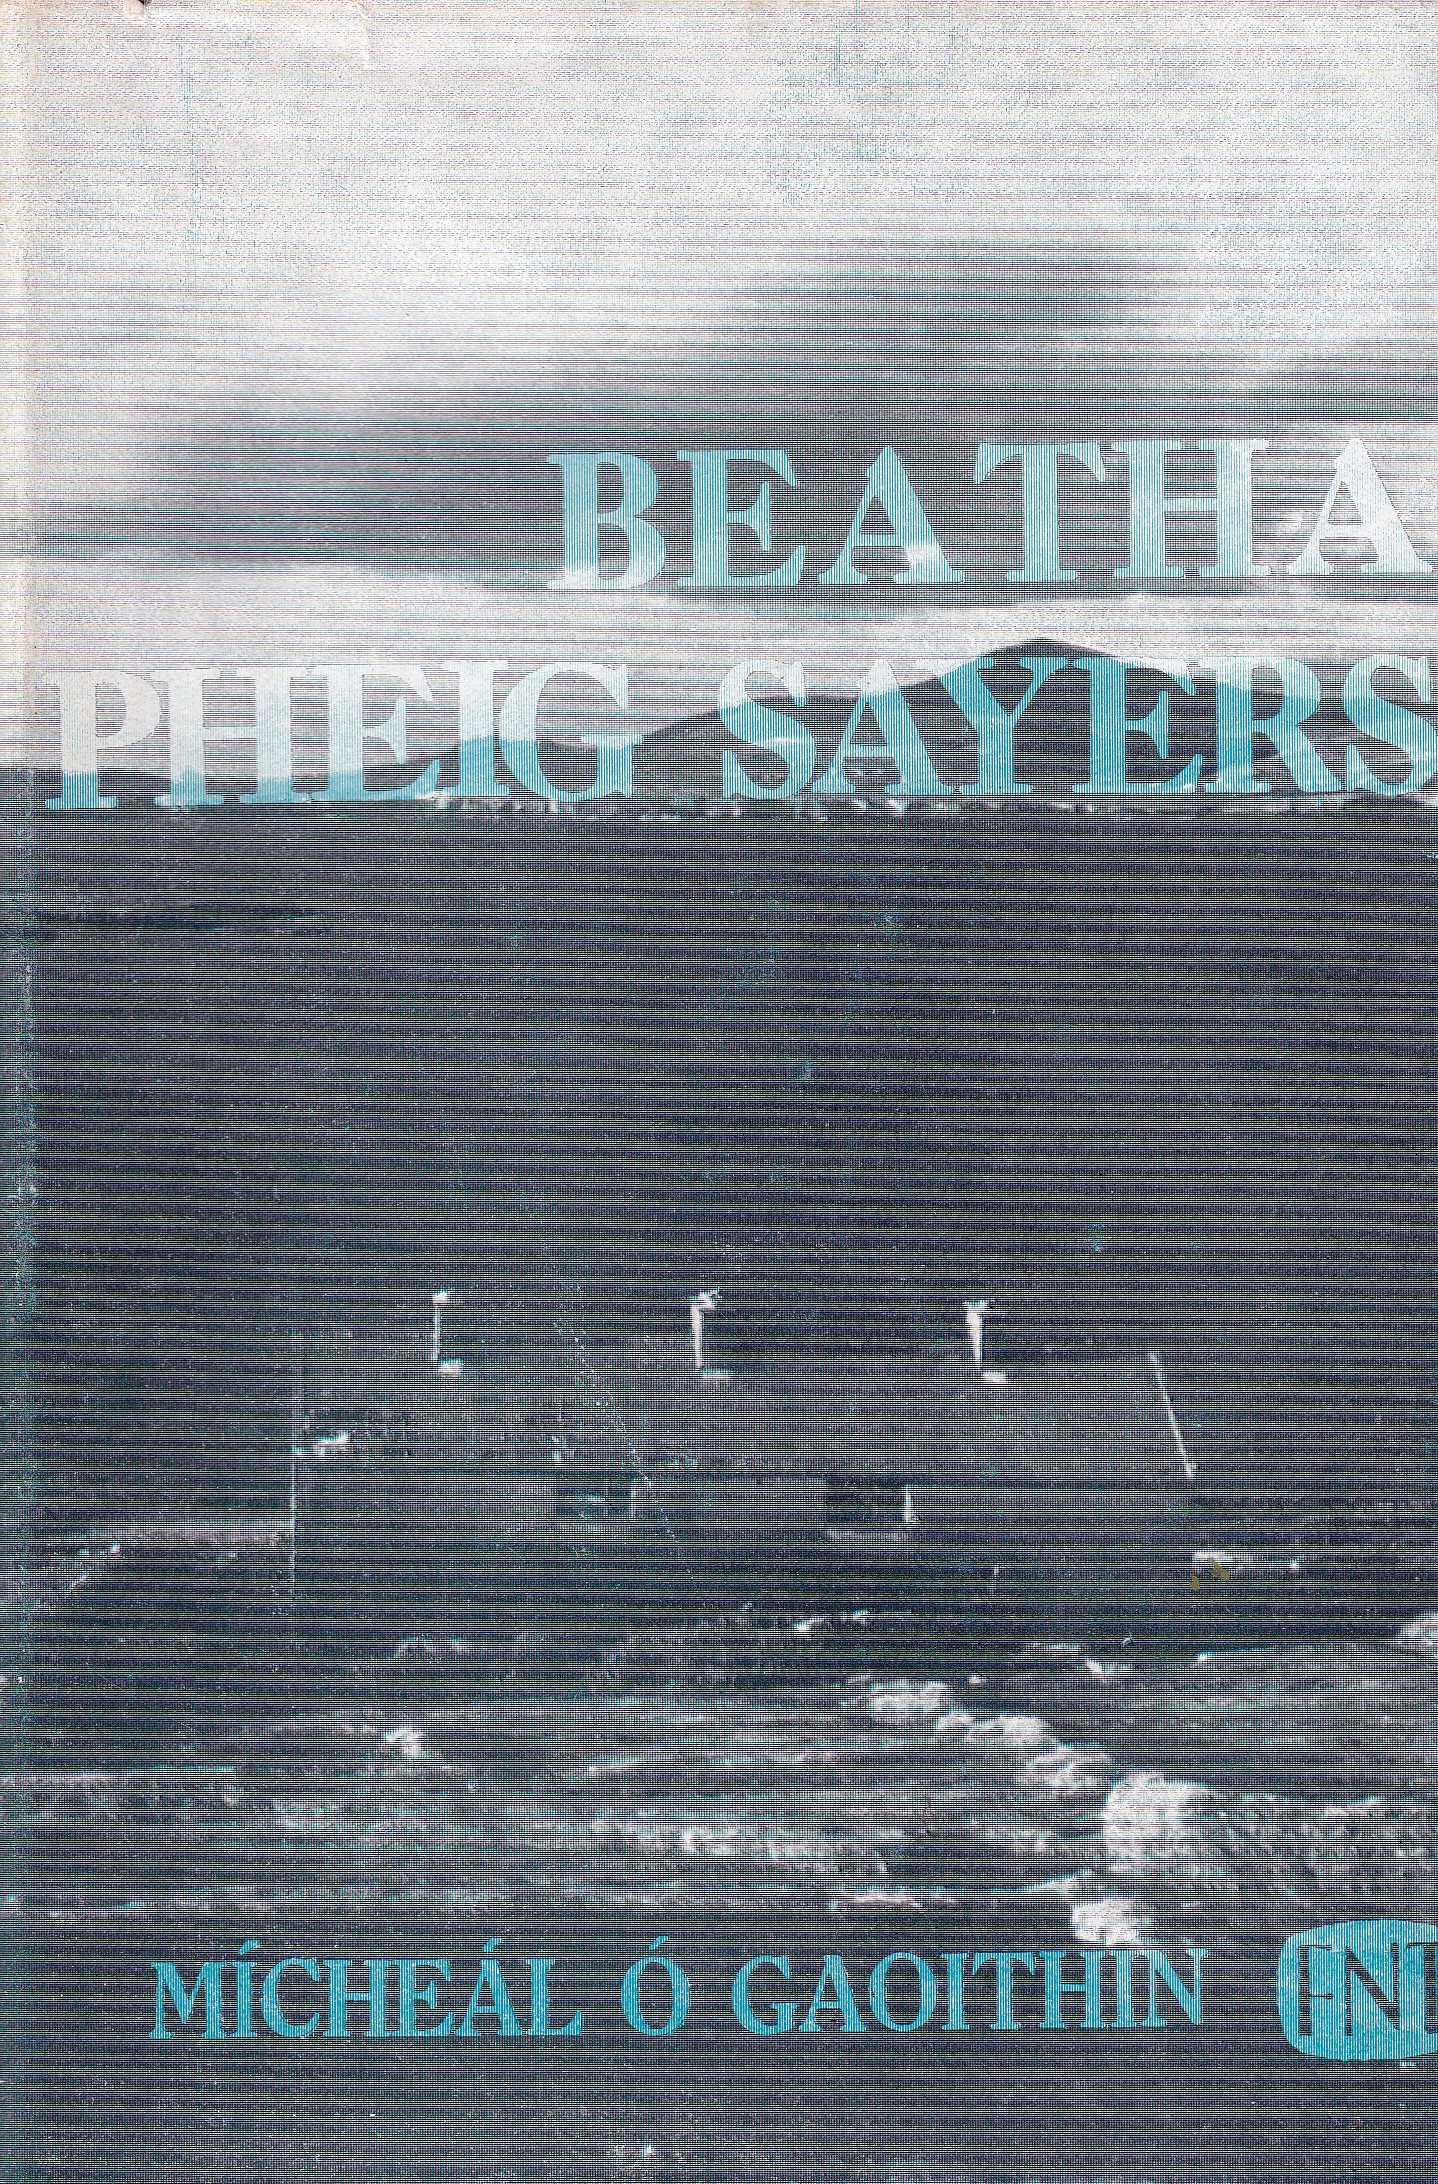 Beatha Pheig Sayers | Mícheál Ó Gaoithin | Charlie Byrne's